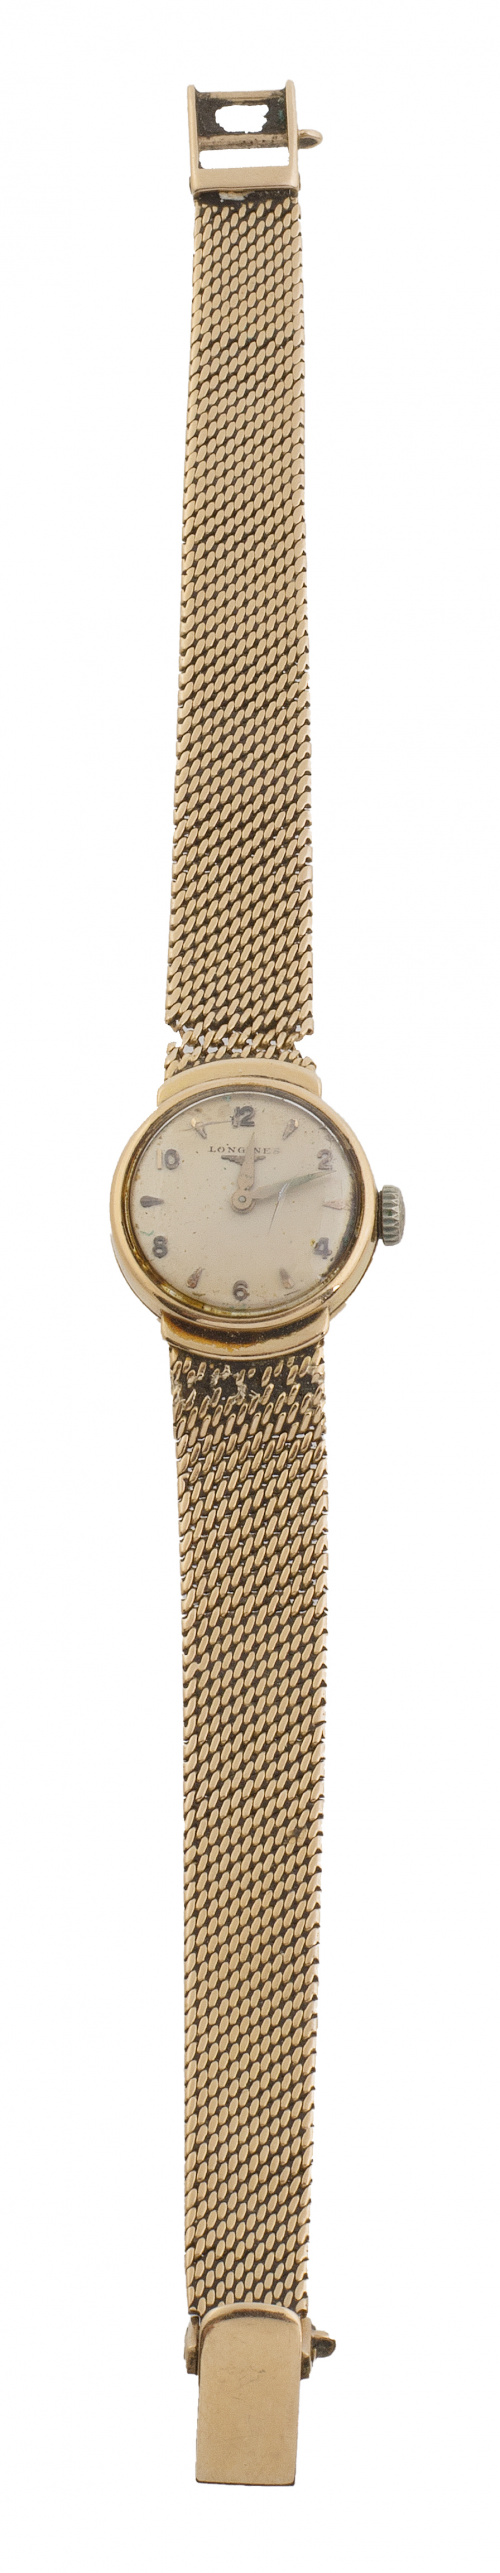 Reloj Longines de pulsera en oro para señora años 50